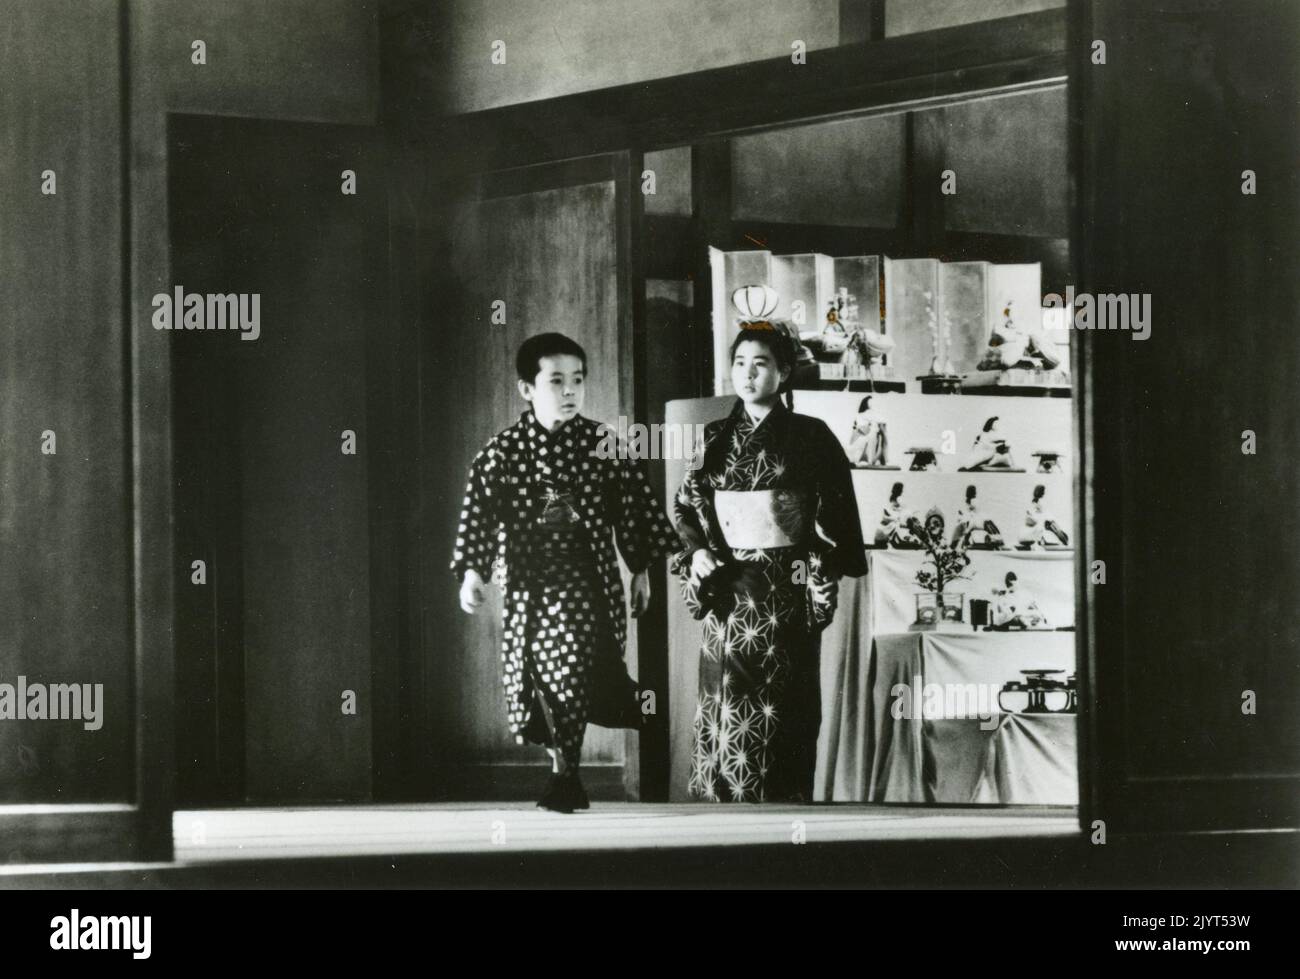 Scene from the movie Dreams by Akira Kurosawa, Japan 1990 Stock Photo